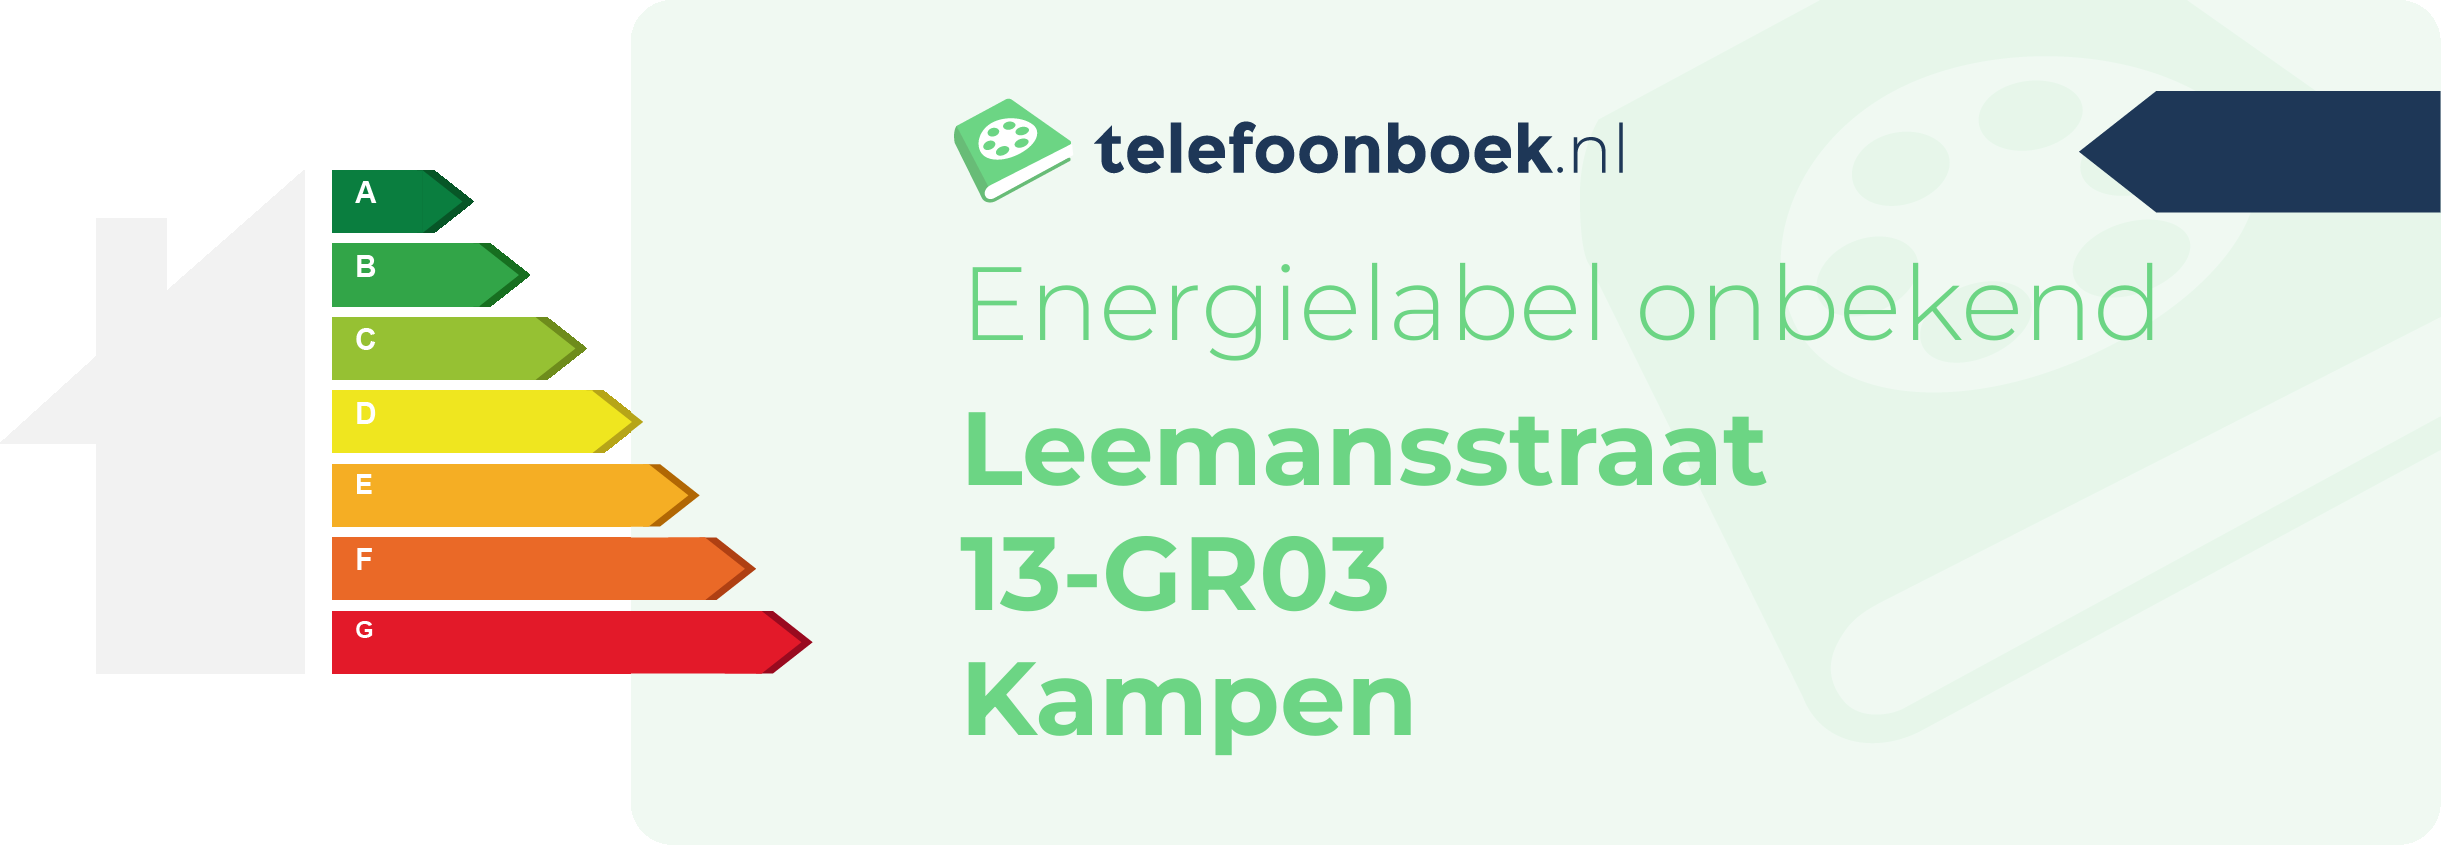 Energielabel Leemansstraat 13-GR03 Kampen